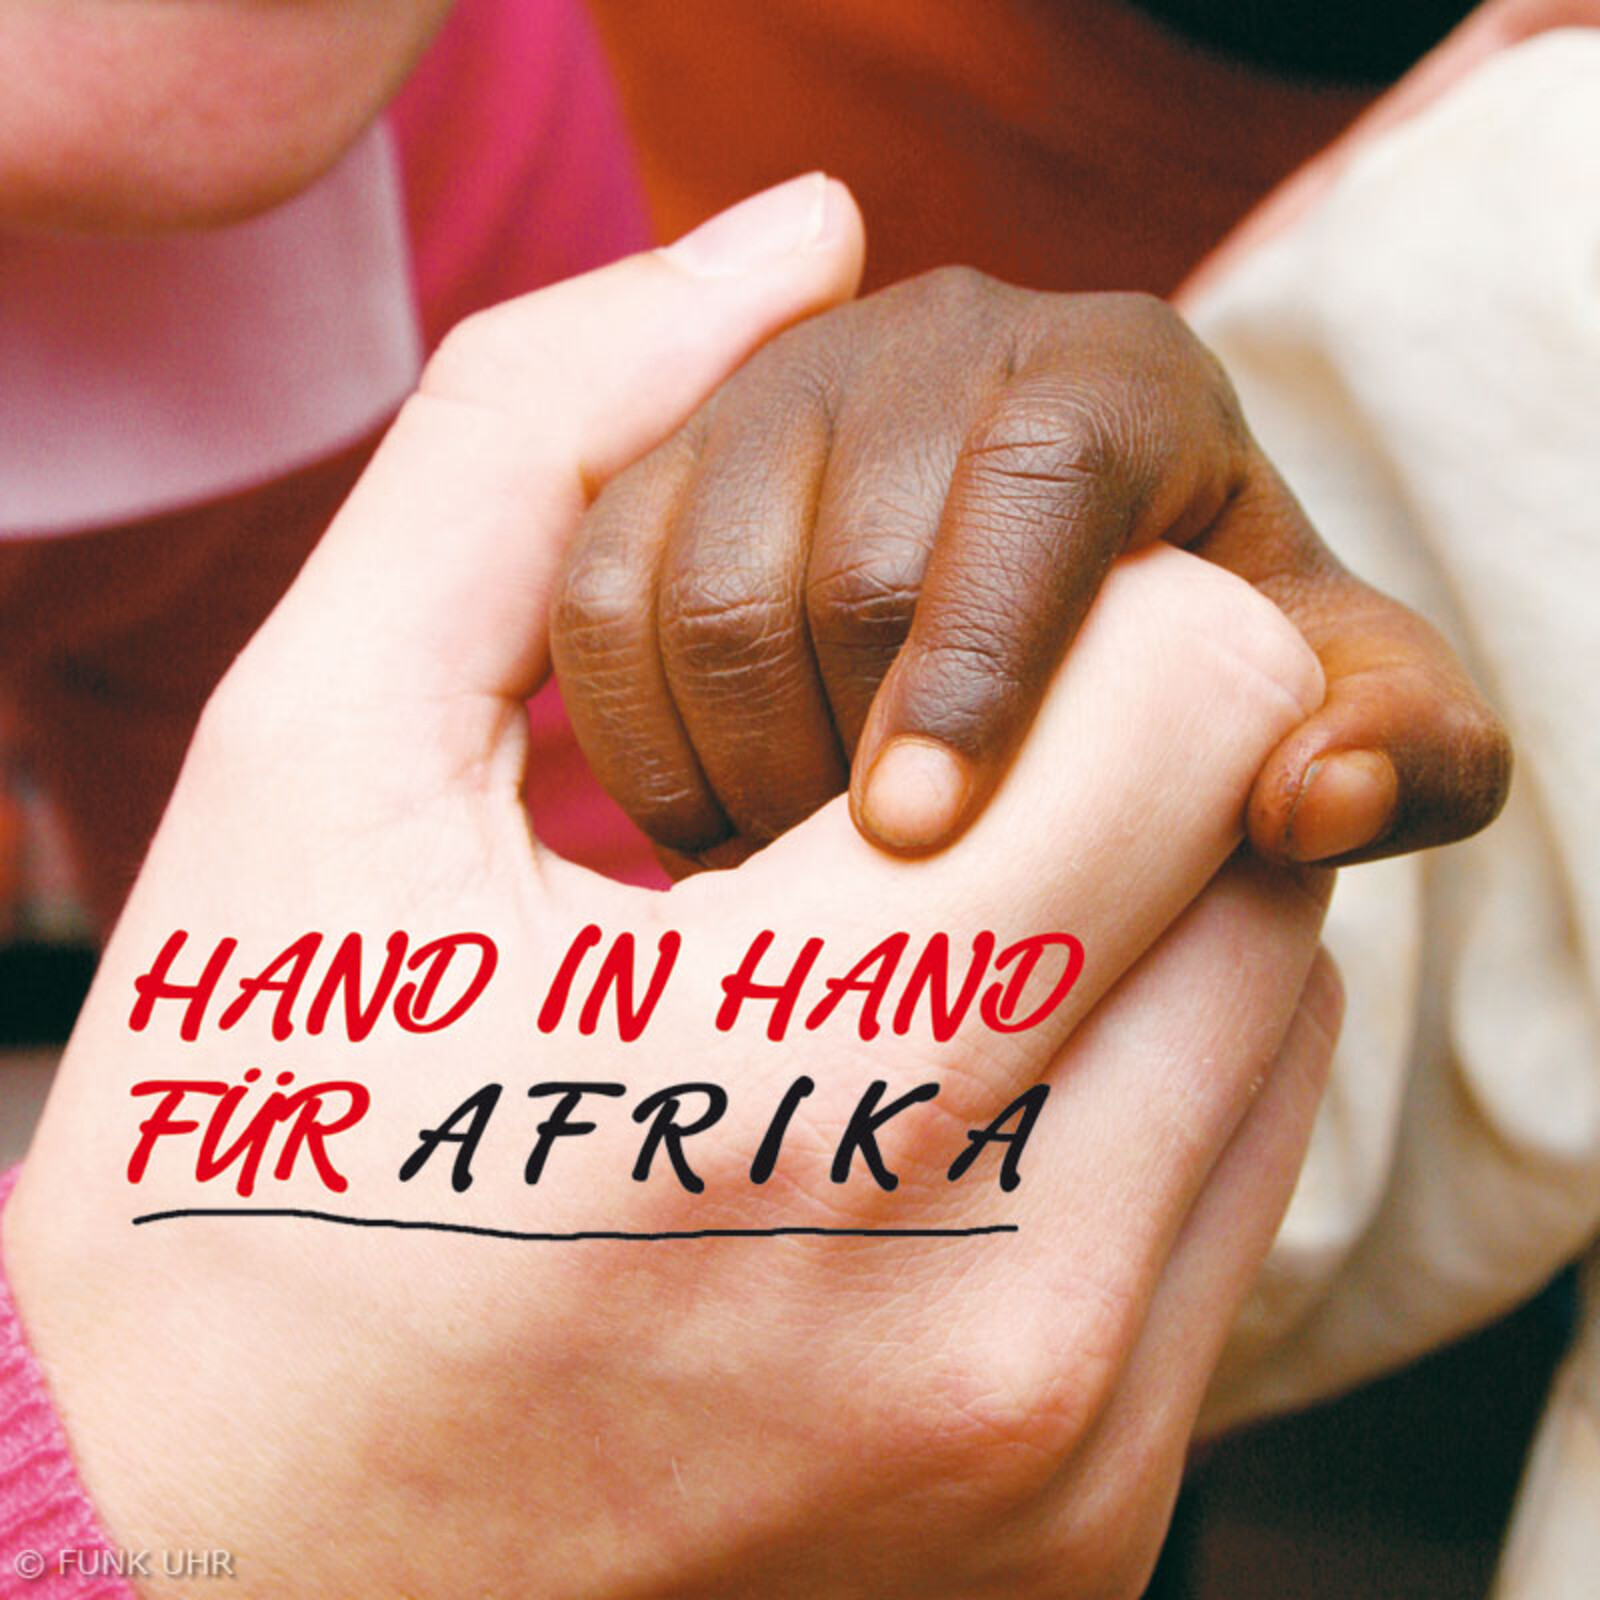 Hand in Hand für Afrika